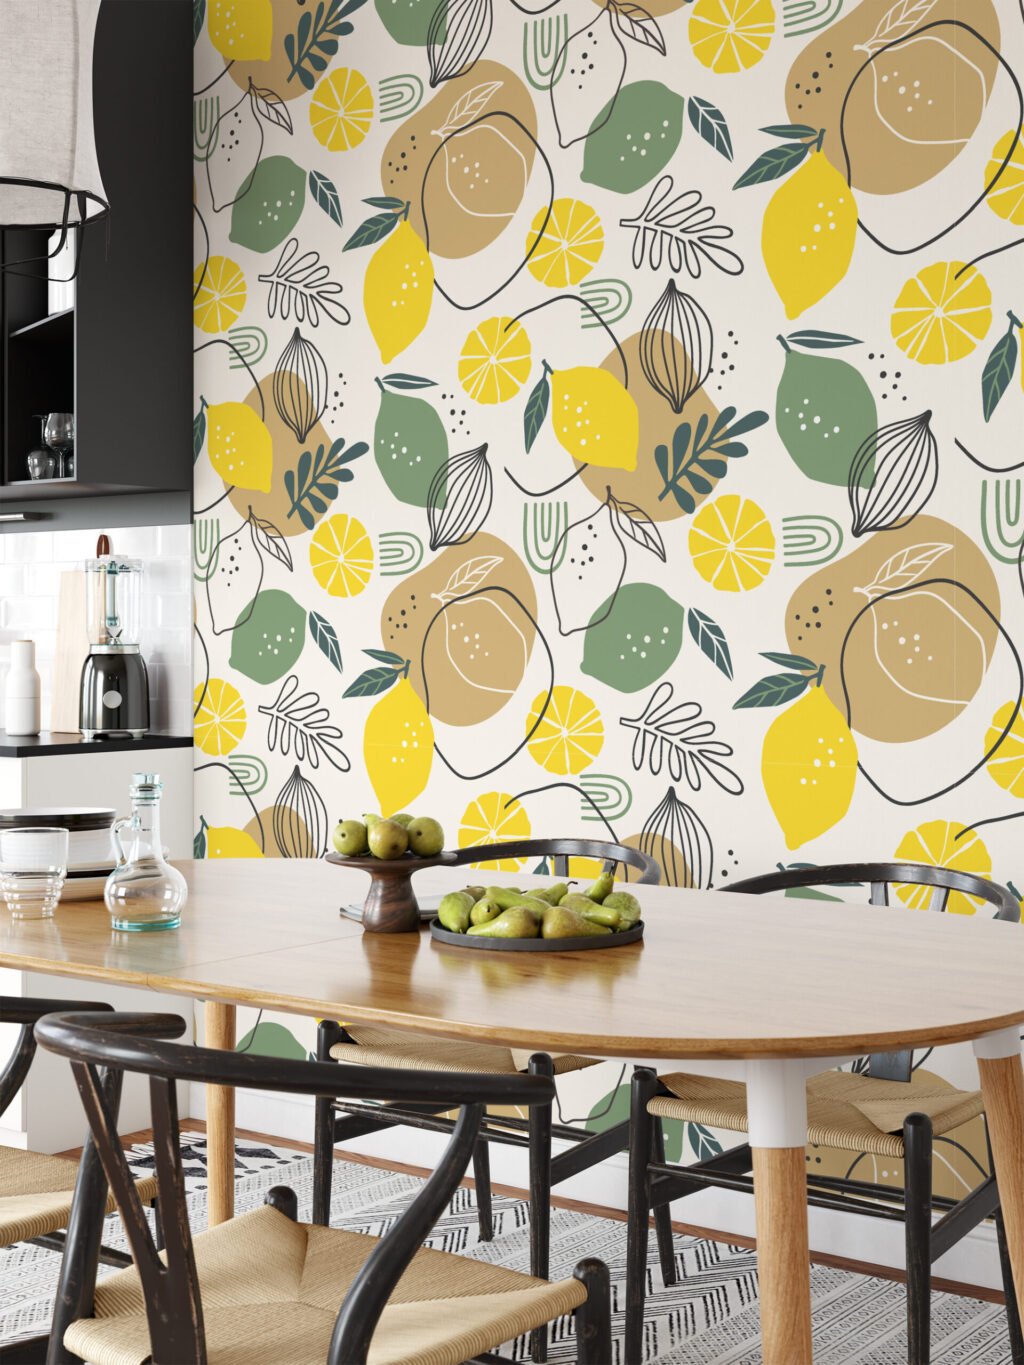 Limon ve Yapraklarla Line Art Duvar Kağıdı, Turunçgil Tasarımı Duvar Posteri Çiçekli Duvar Kağıtları 5